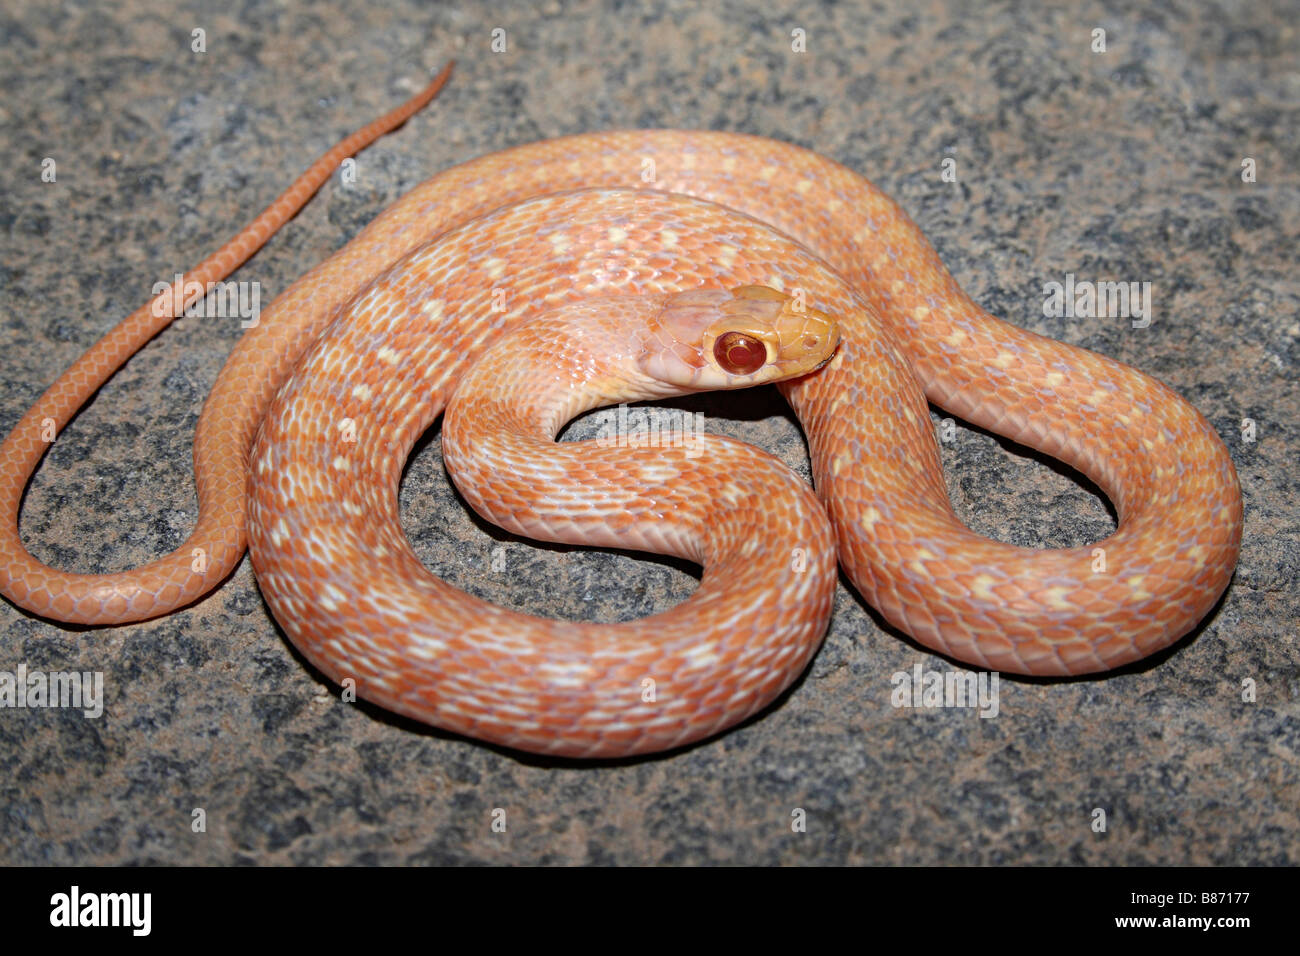 Amphiesma stolatum KEELBACK à rayures chamois pas venimeuse, communs. Étroitement liées à des serpents d'eau. Panvel, Maharashtra, Inde Banque D'Images